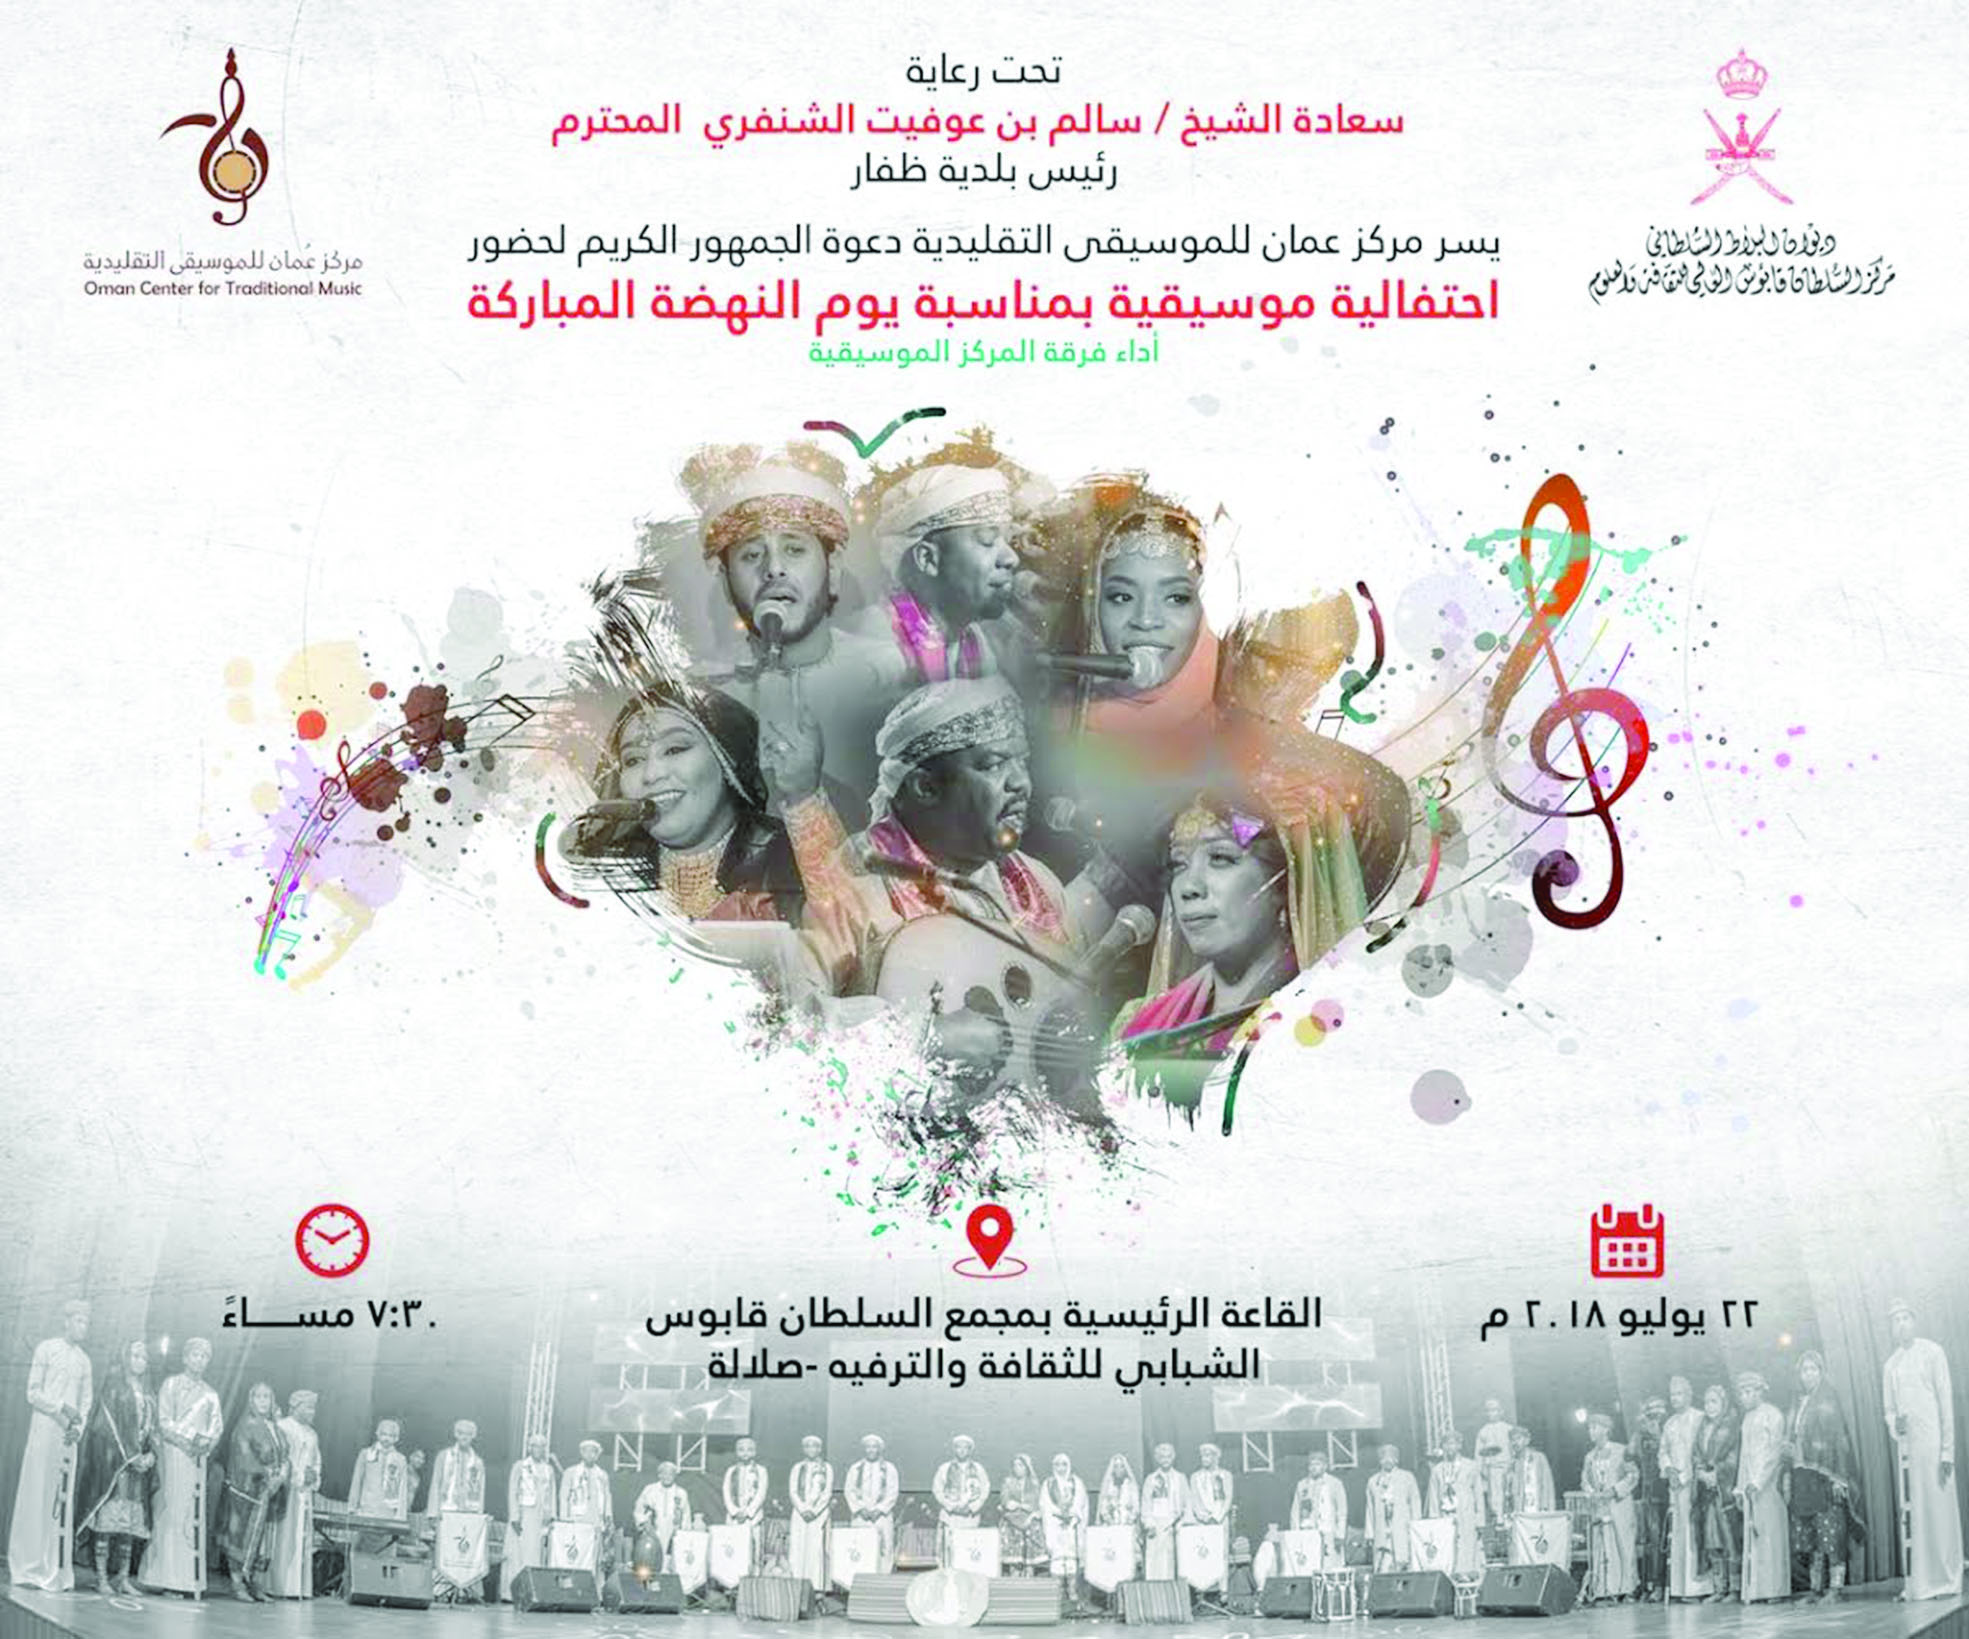 مركز عمان للموسيقى ينظم احتفالية بمناسبة يوم النهضة